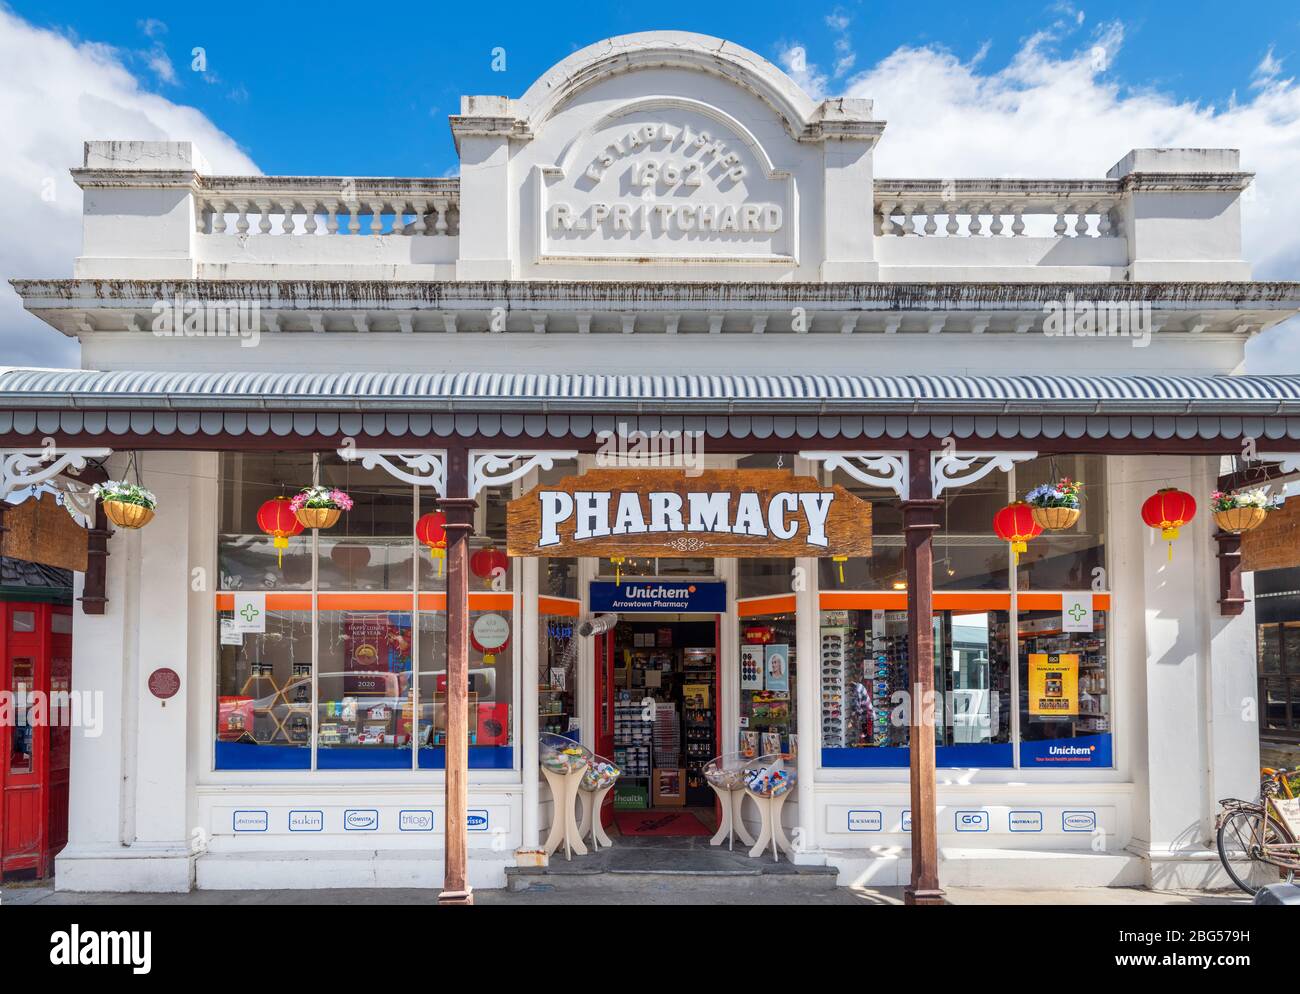 Pharmacie du XIXe siècle sur Buckingham Street, la rue principale de la ville historique d'extraction d'or d'Arrowtown, Nouvelle-Zélande Banque D'Images